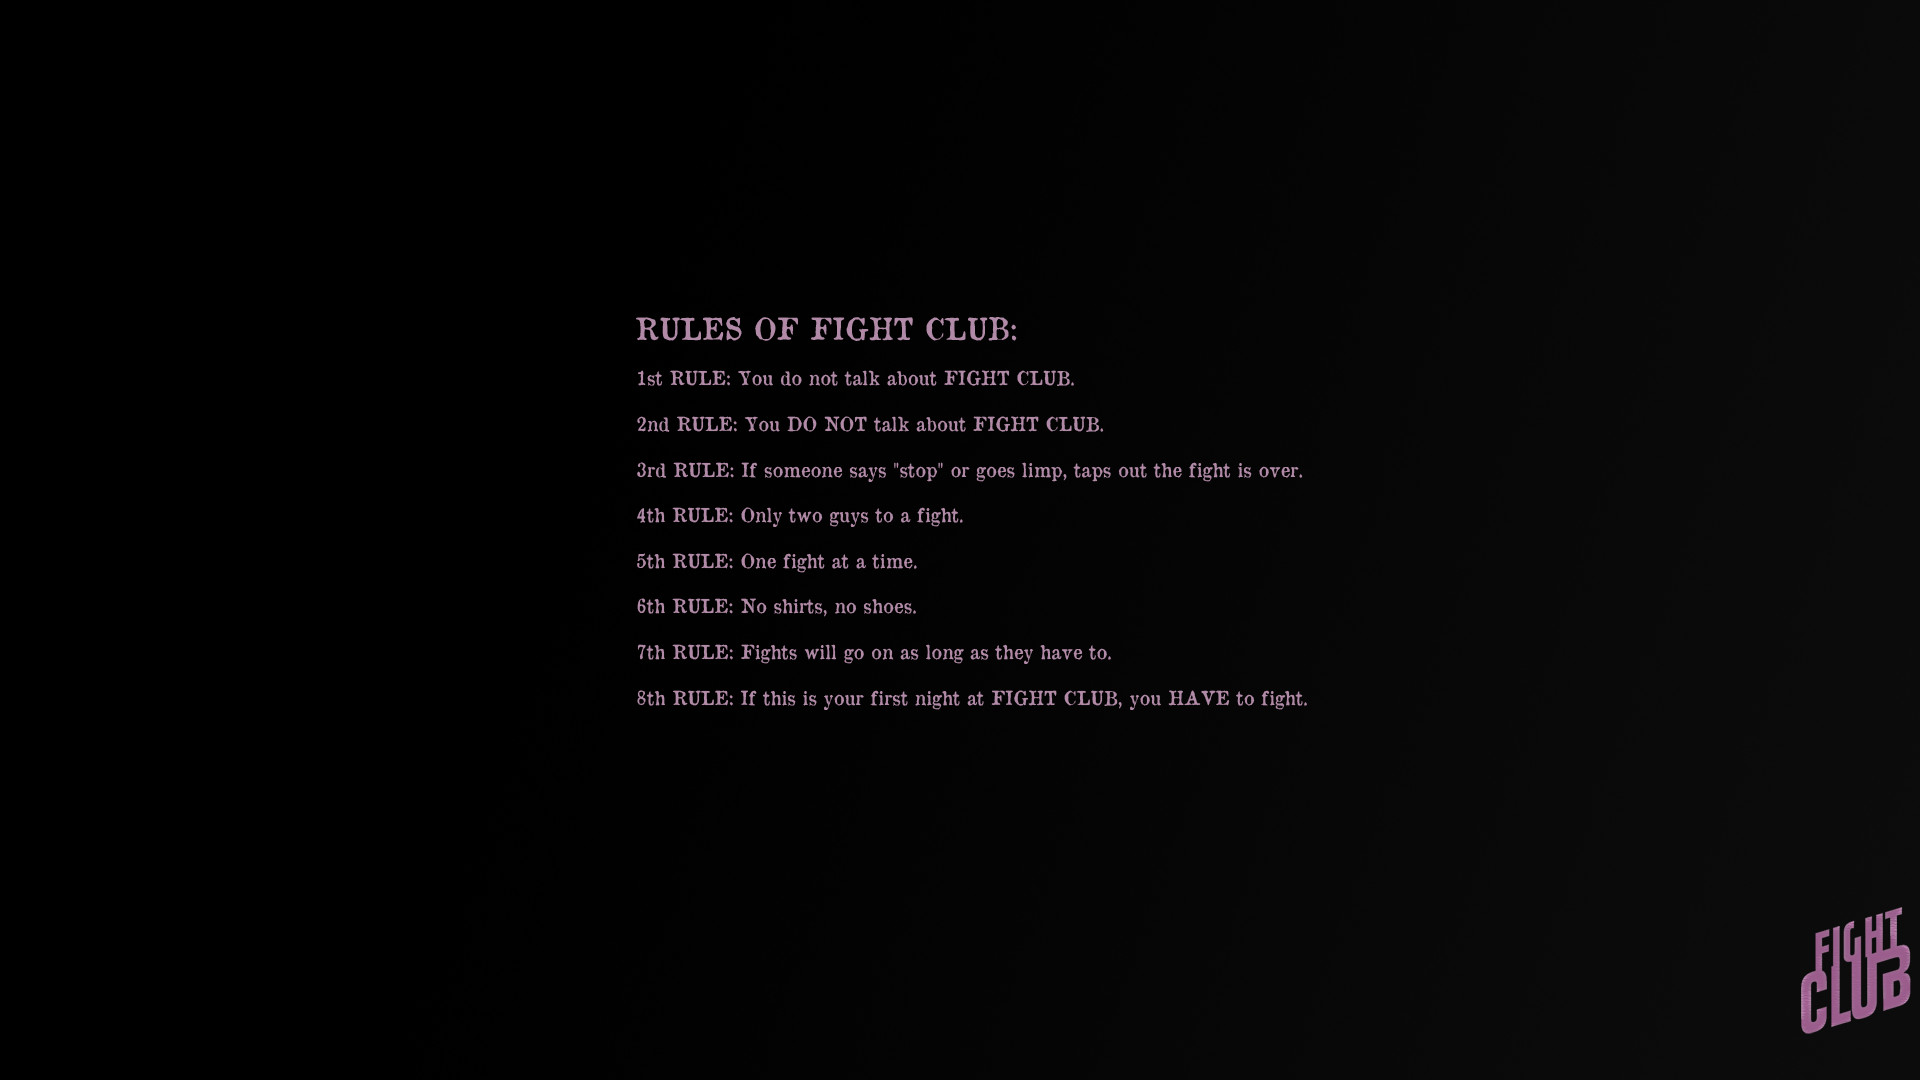 Fighting club rule 34. Fight Club Rules. Восемь правил бойцовского клуба. Fight Club Wallpaper 1920 1080. Правила бойцовского клуба на английском.